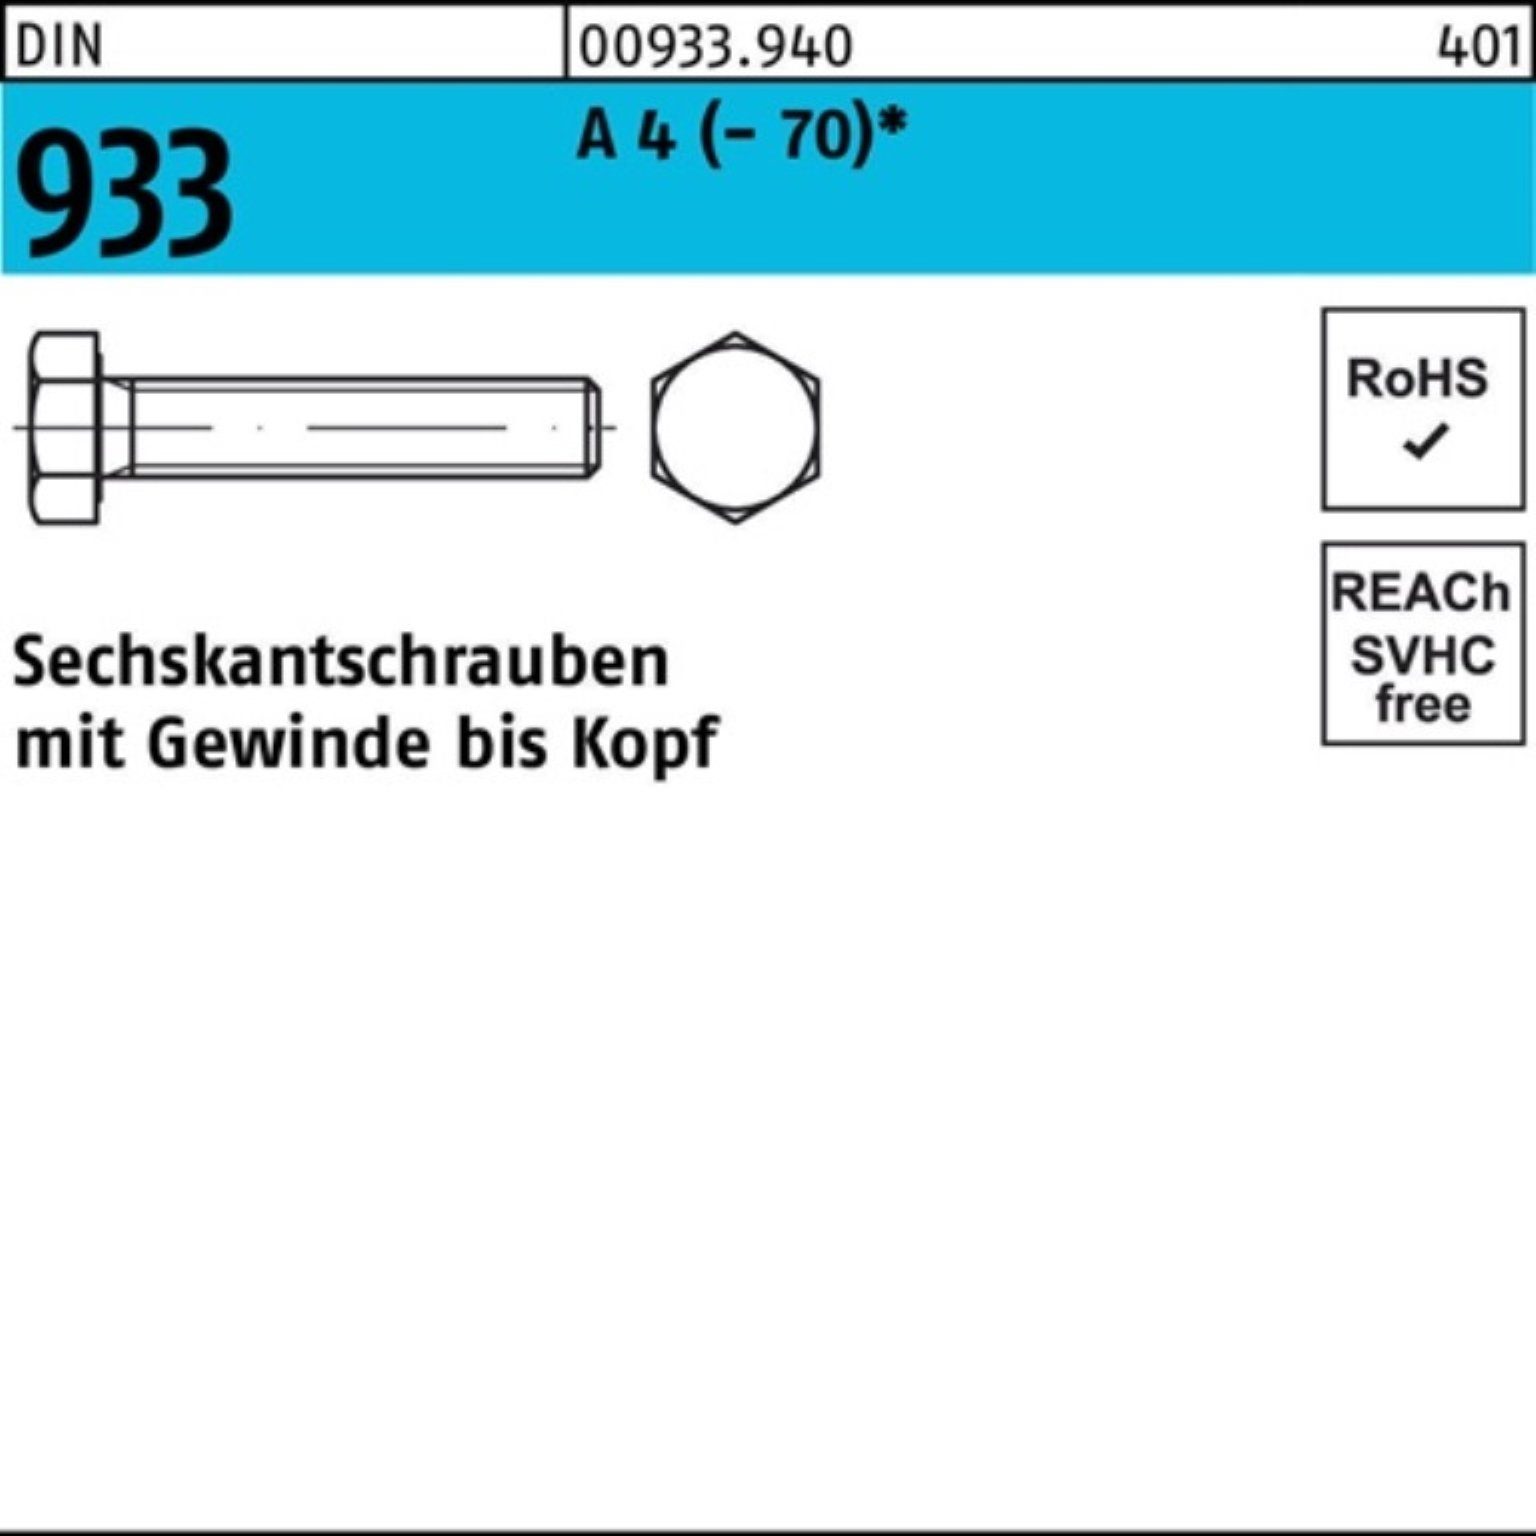 Reyher Sechskantschraube 100 Pack DIN 100er 933 50 M10x VG Stück Sechskantschraube A 4 (70)